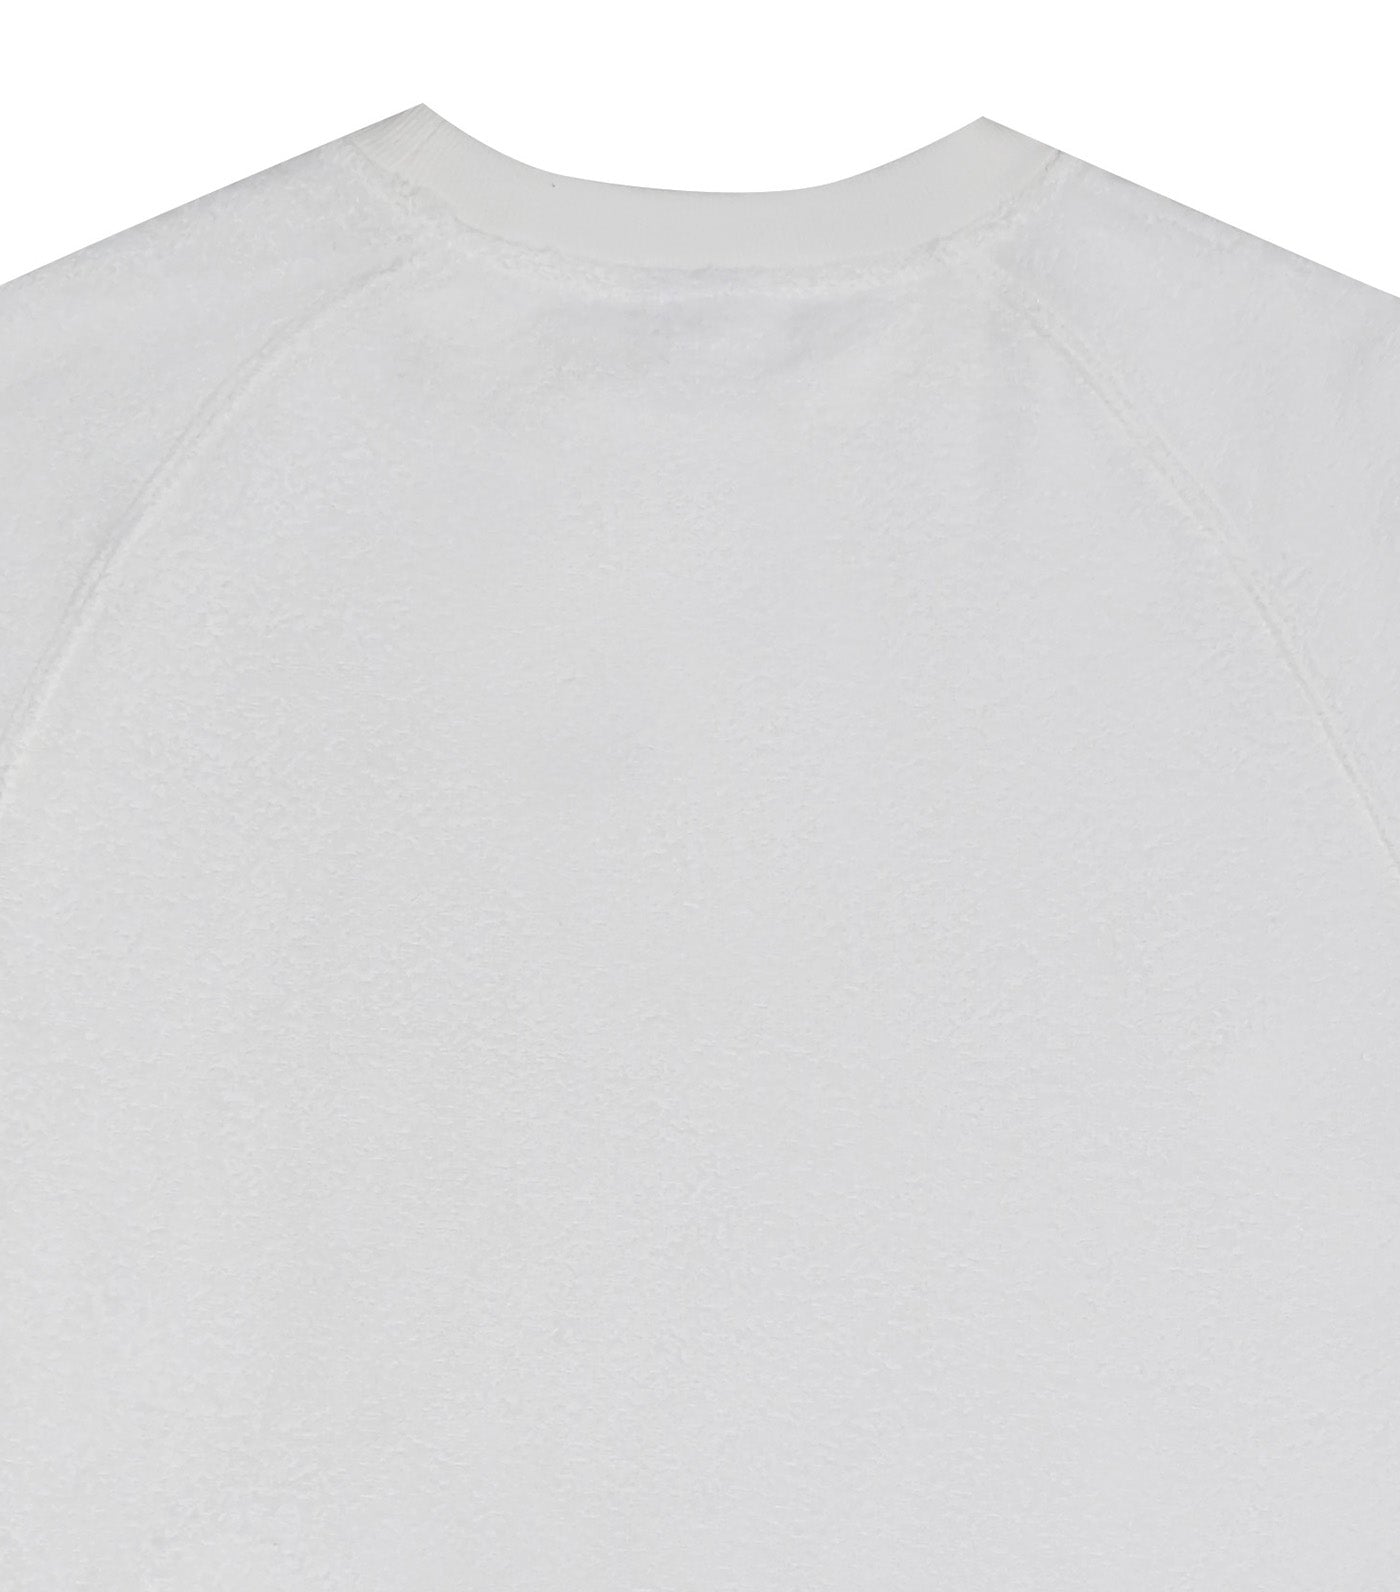 Japan Line Raglan Short Sleeve T-Shirt White